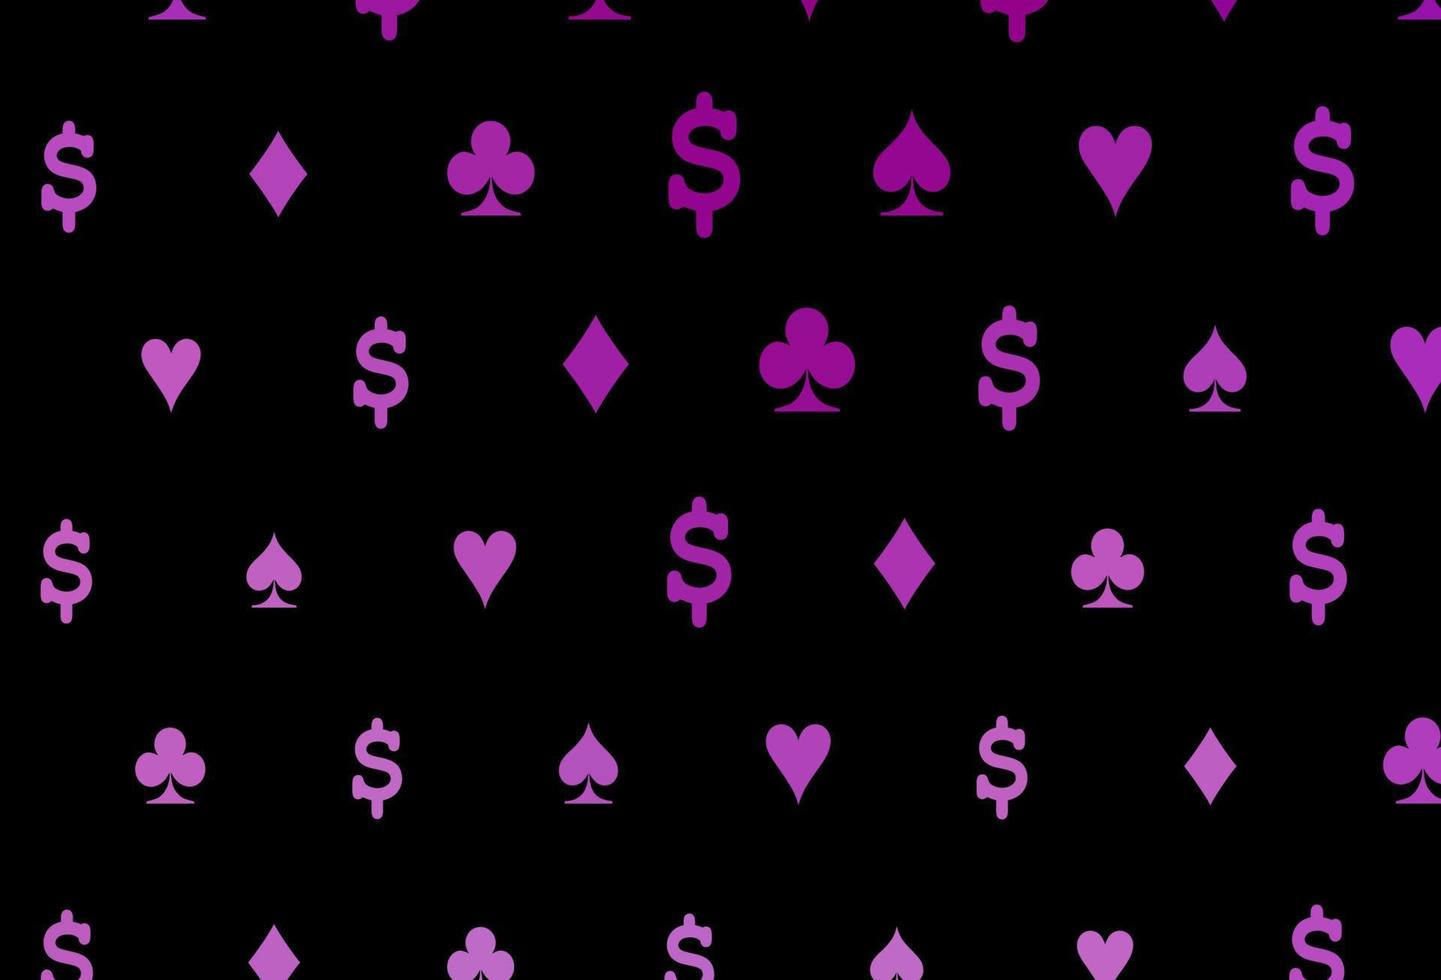 modelo de vetor roxo escuro com símbolos de pôquer.